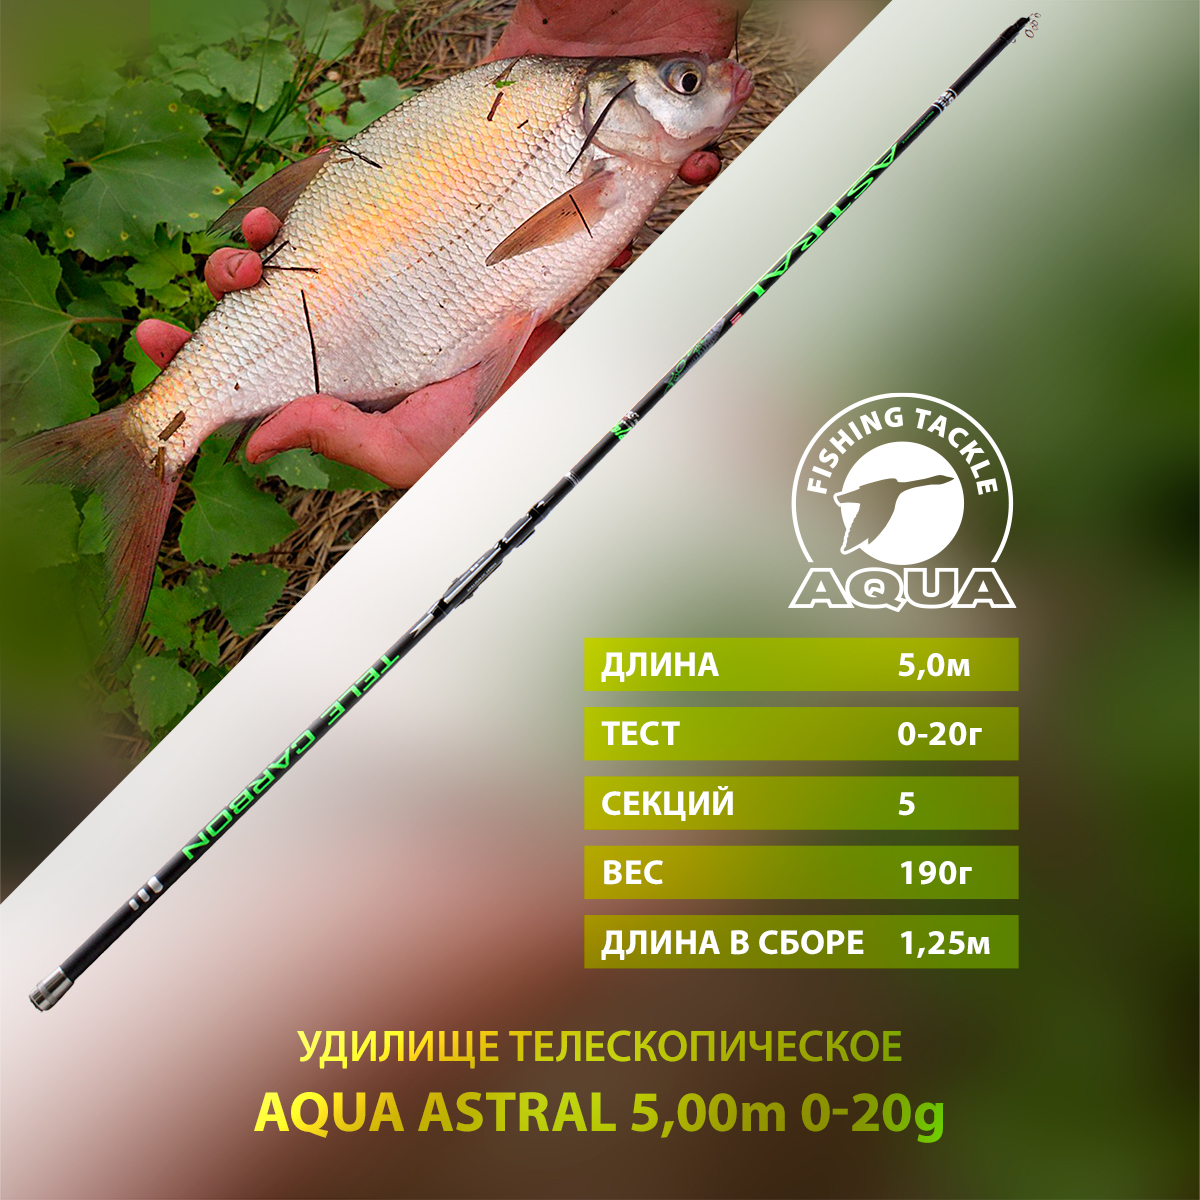 Удилище телескопическое для рыбалки AQUA ASTRAL с кольцами 5,00m, 0-30g